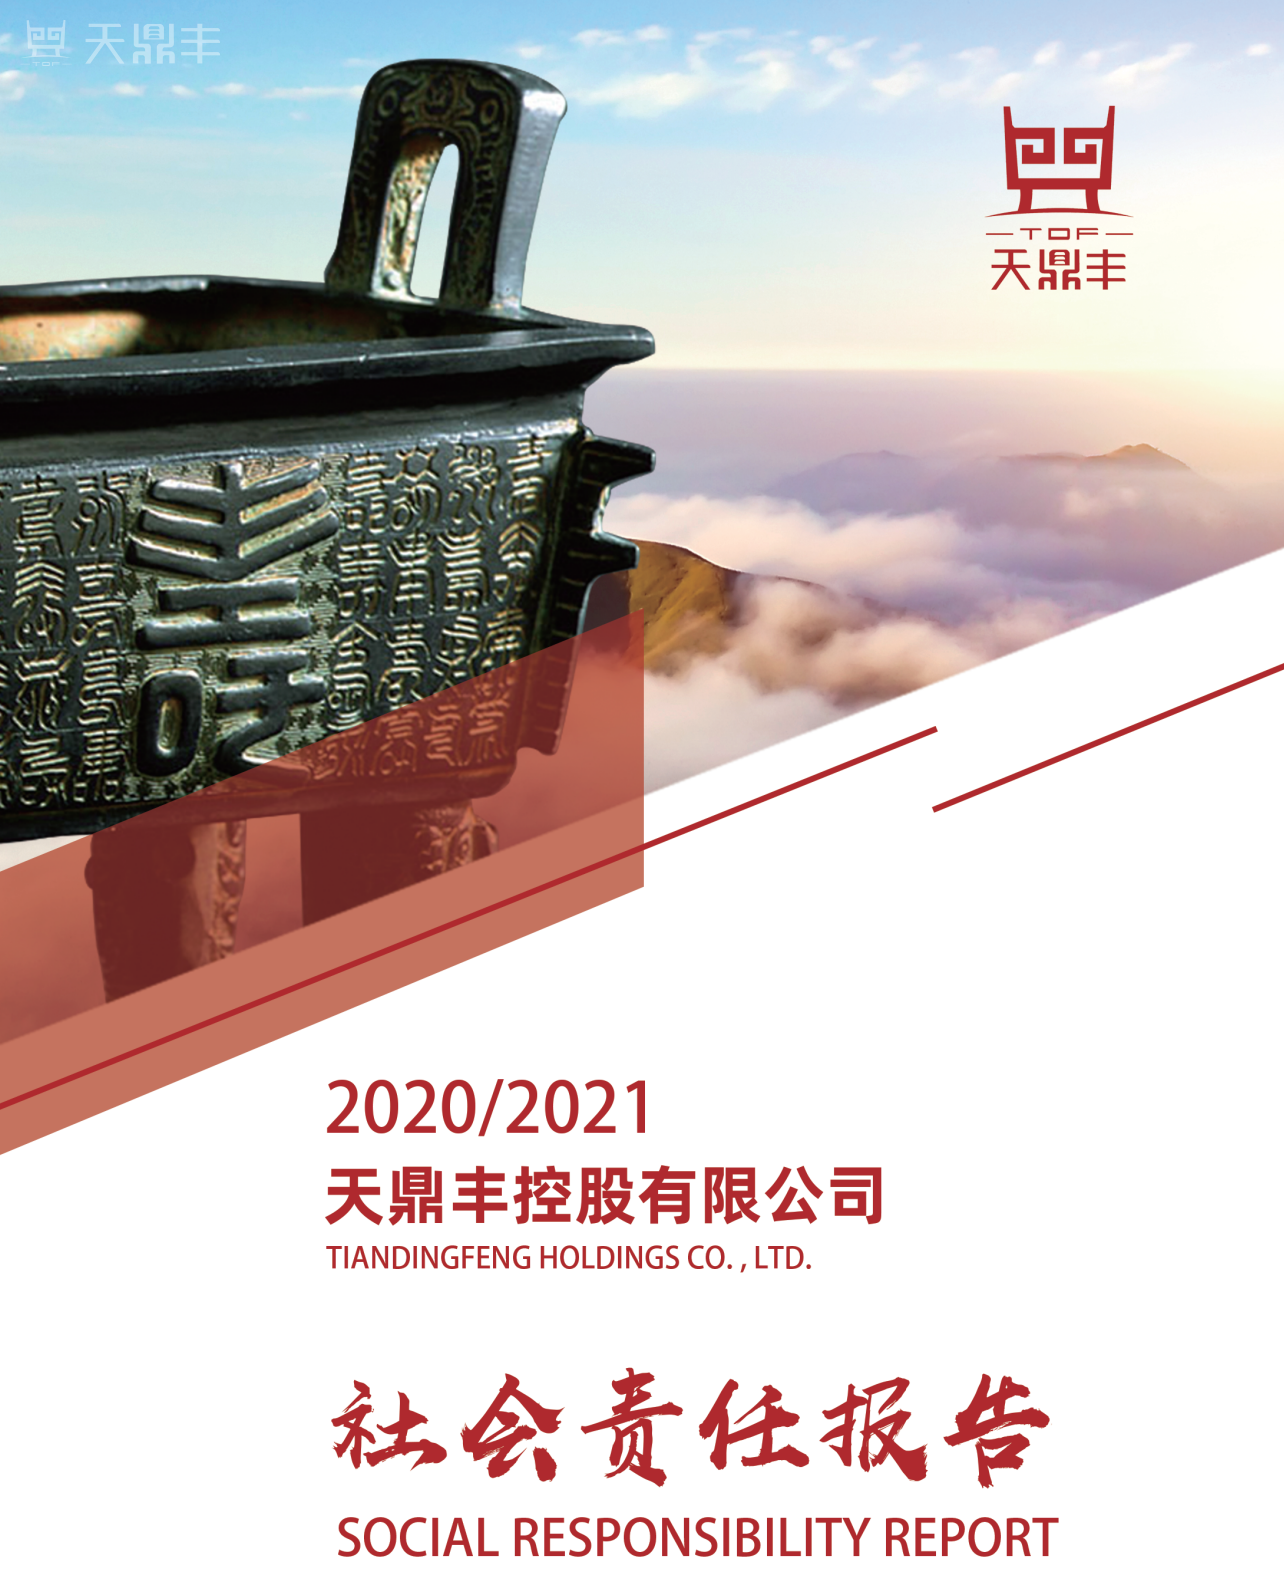 天鼎丰发布2020/2021社会责任报告